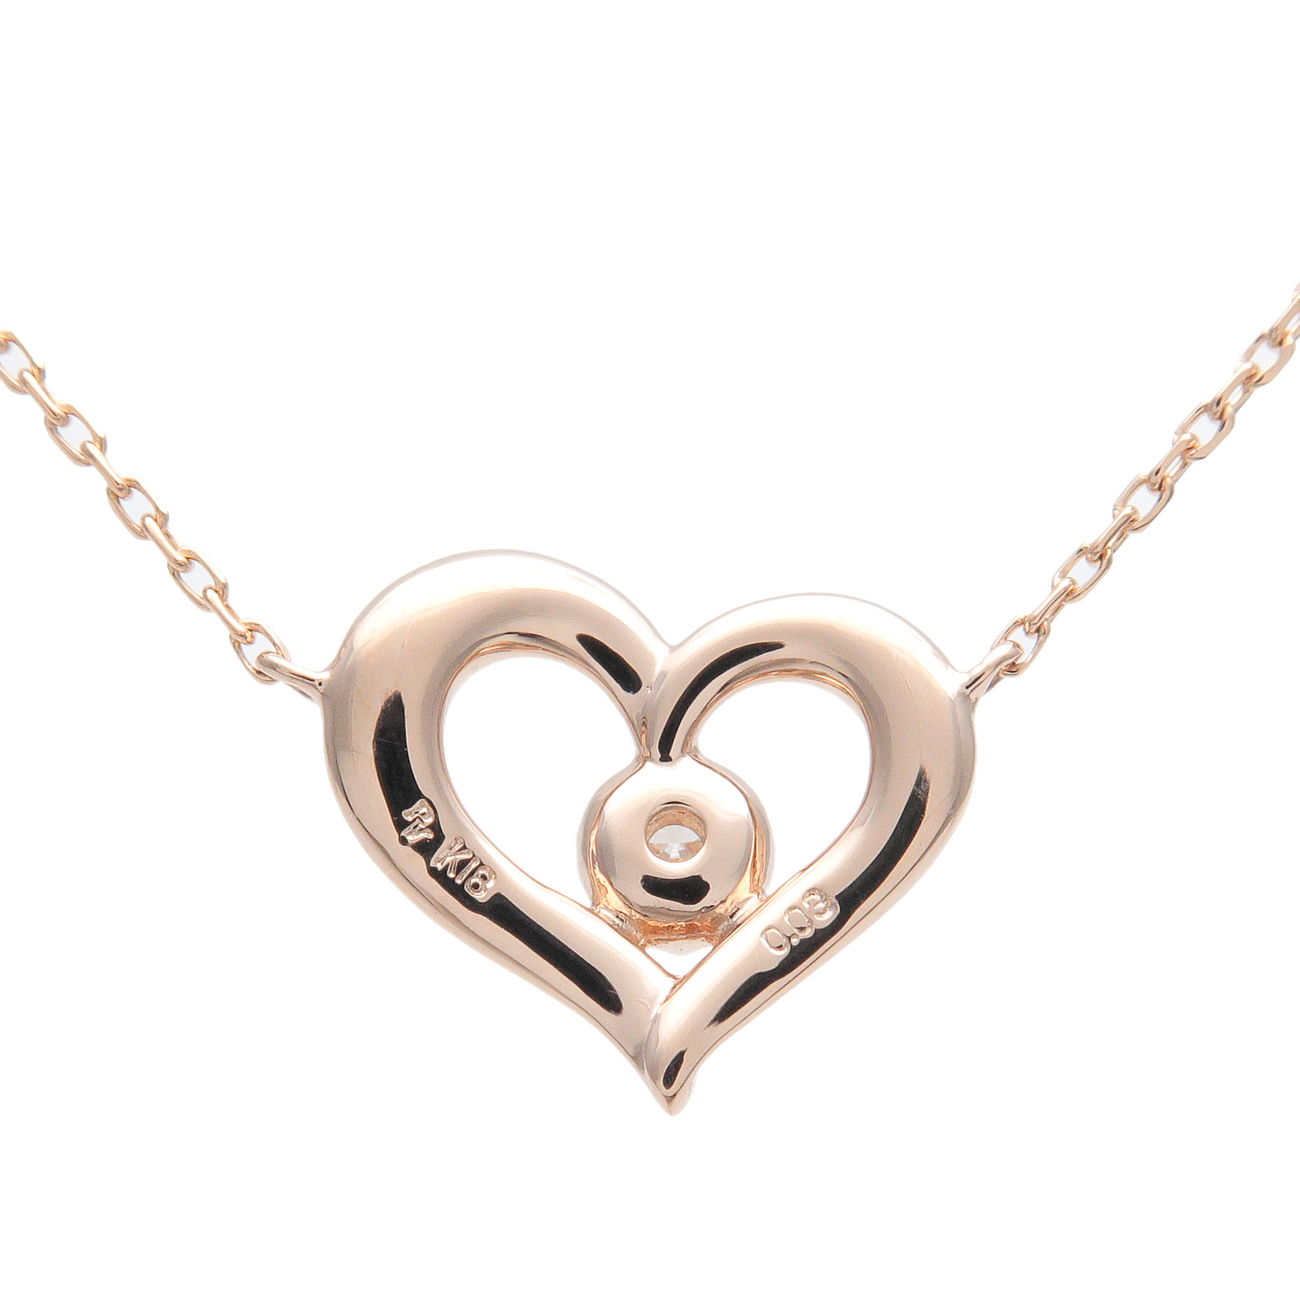 Ponte-Vecchio-Heart-1P-Diamond-Necklace-0.03ct-K18-750-Rose-Gold